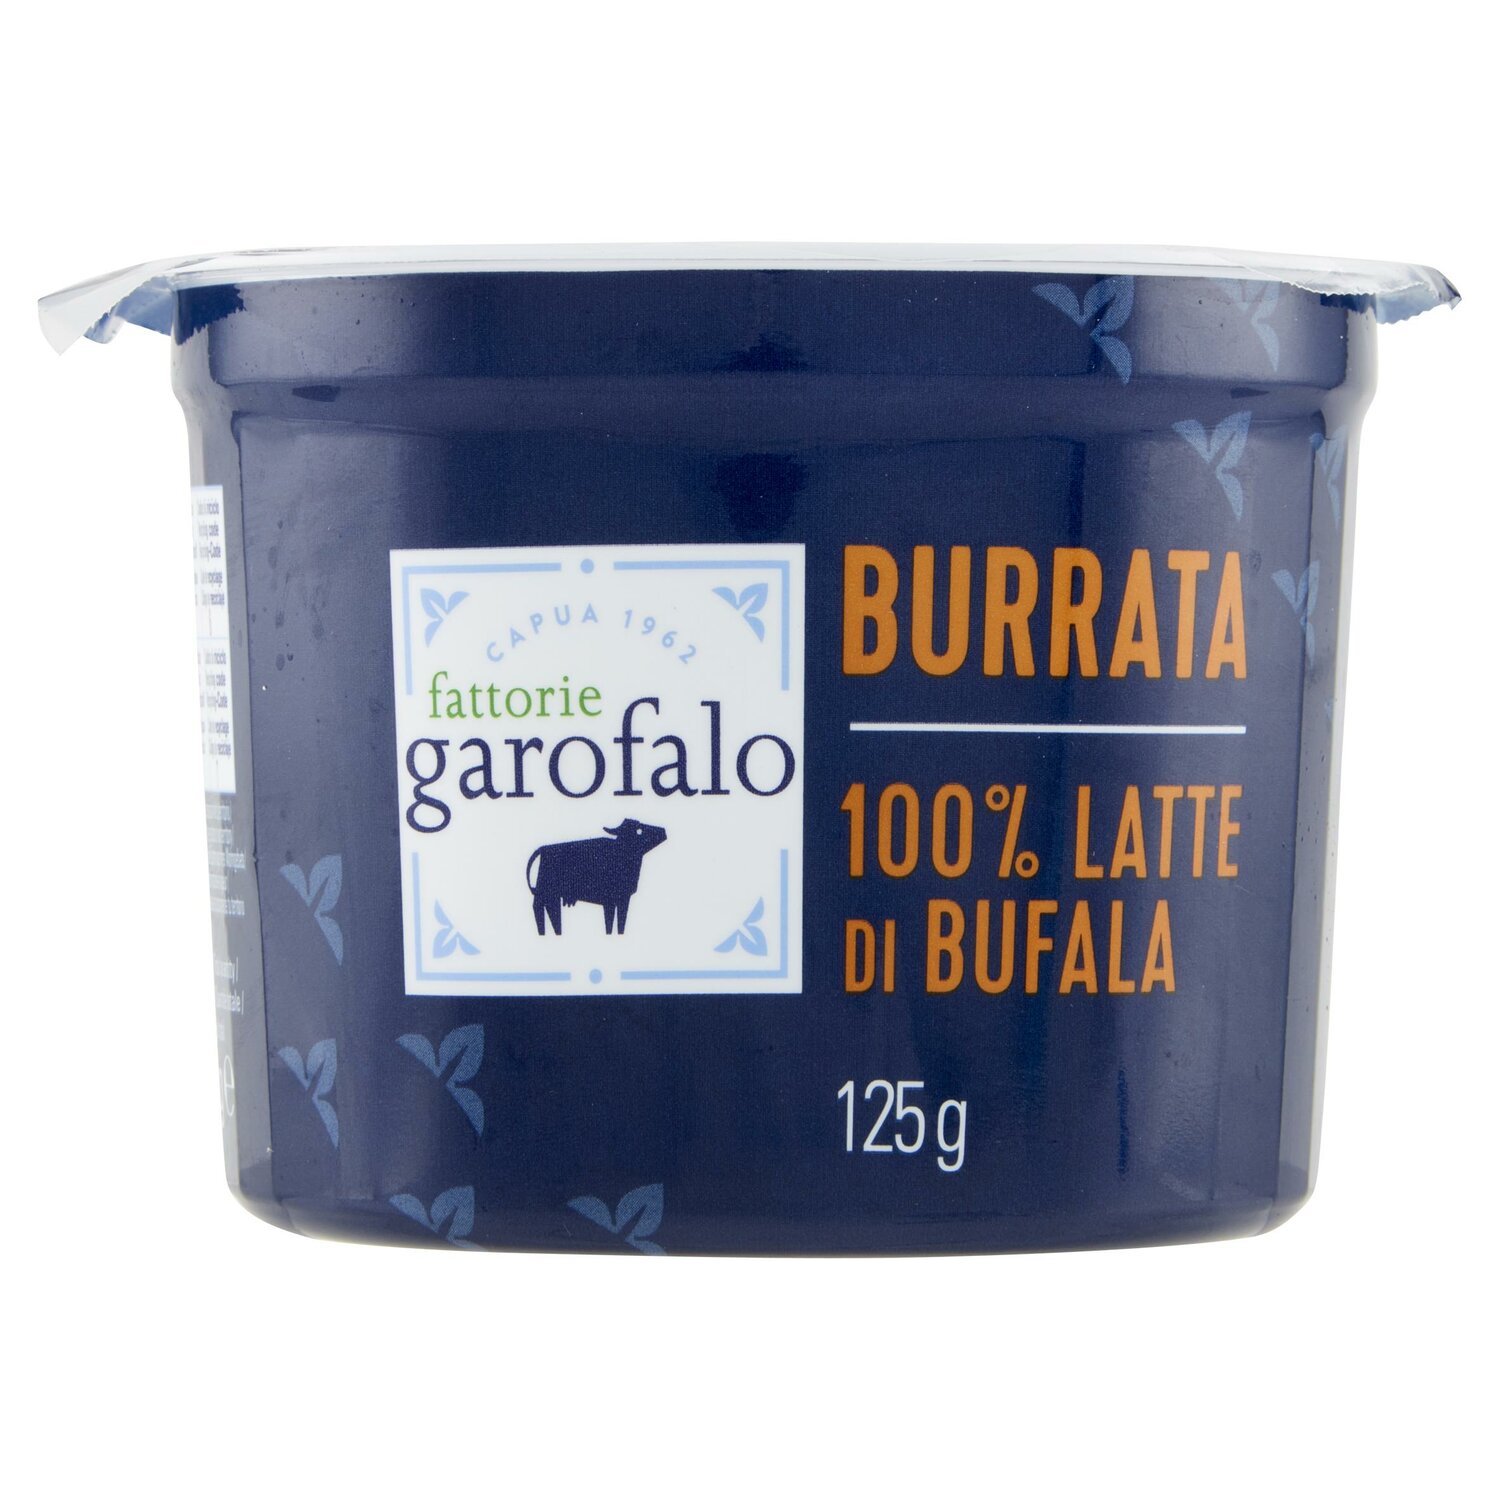 fattorie garofalo Burrata 100% Latte di Bufala 125 g